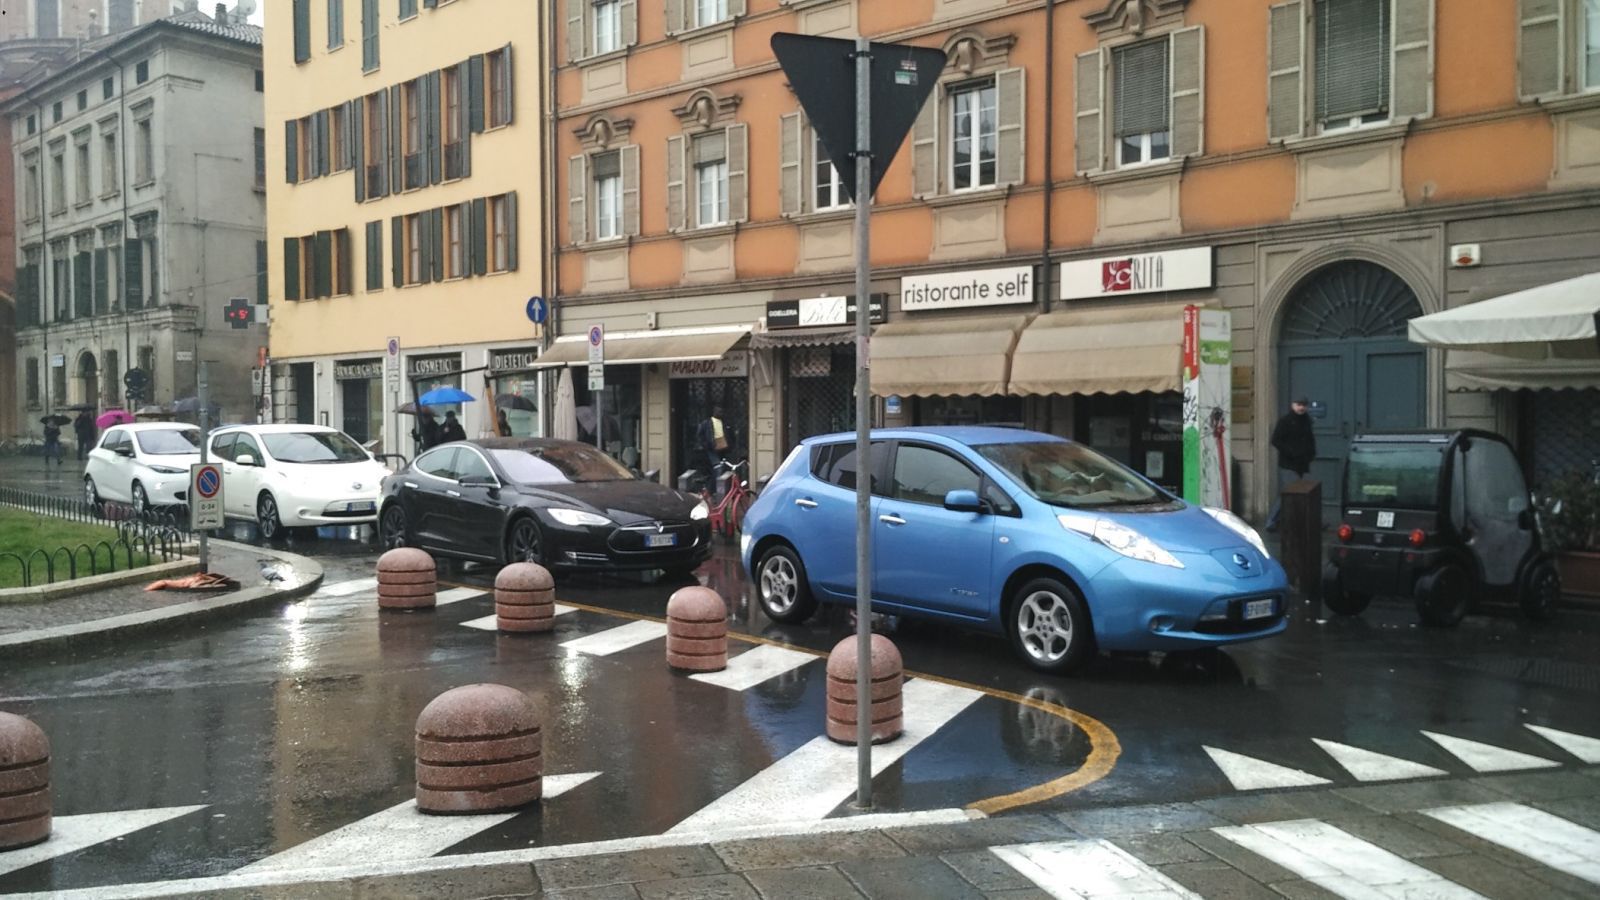 Breve sosta in Piazza Gioberti per parcheggiare le auto che erano prive di permesso per circolare in ZTL, visione dal davanti...